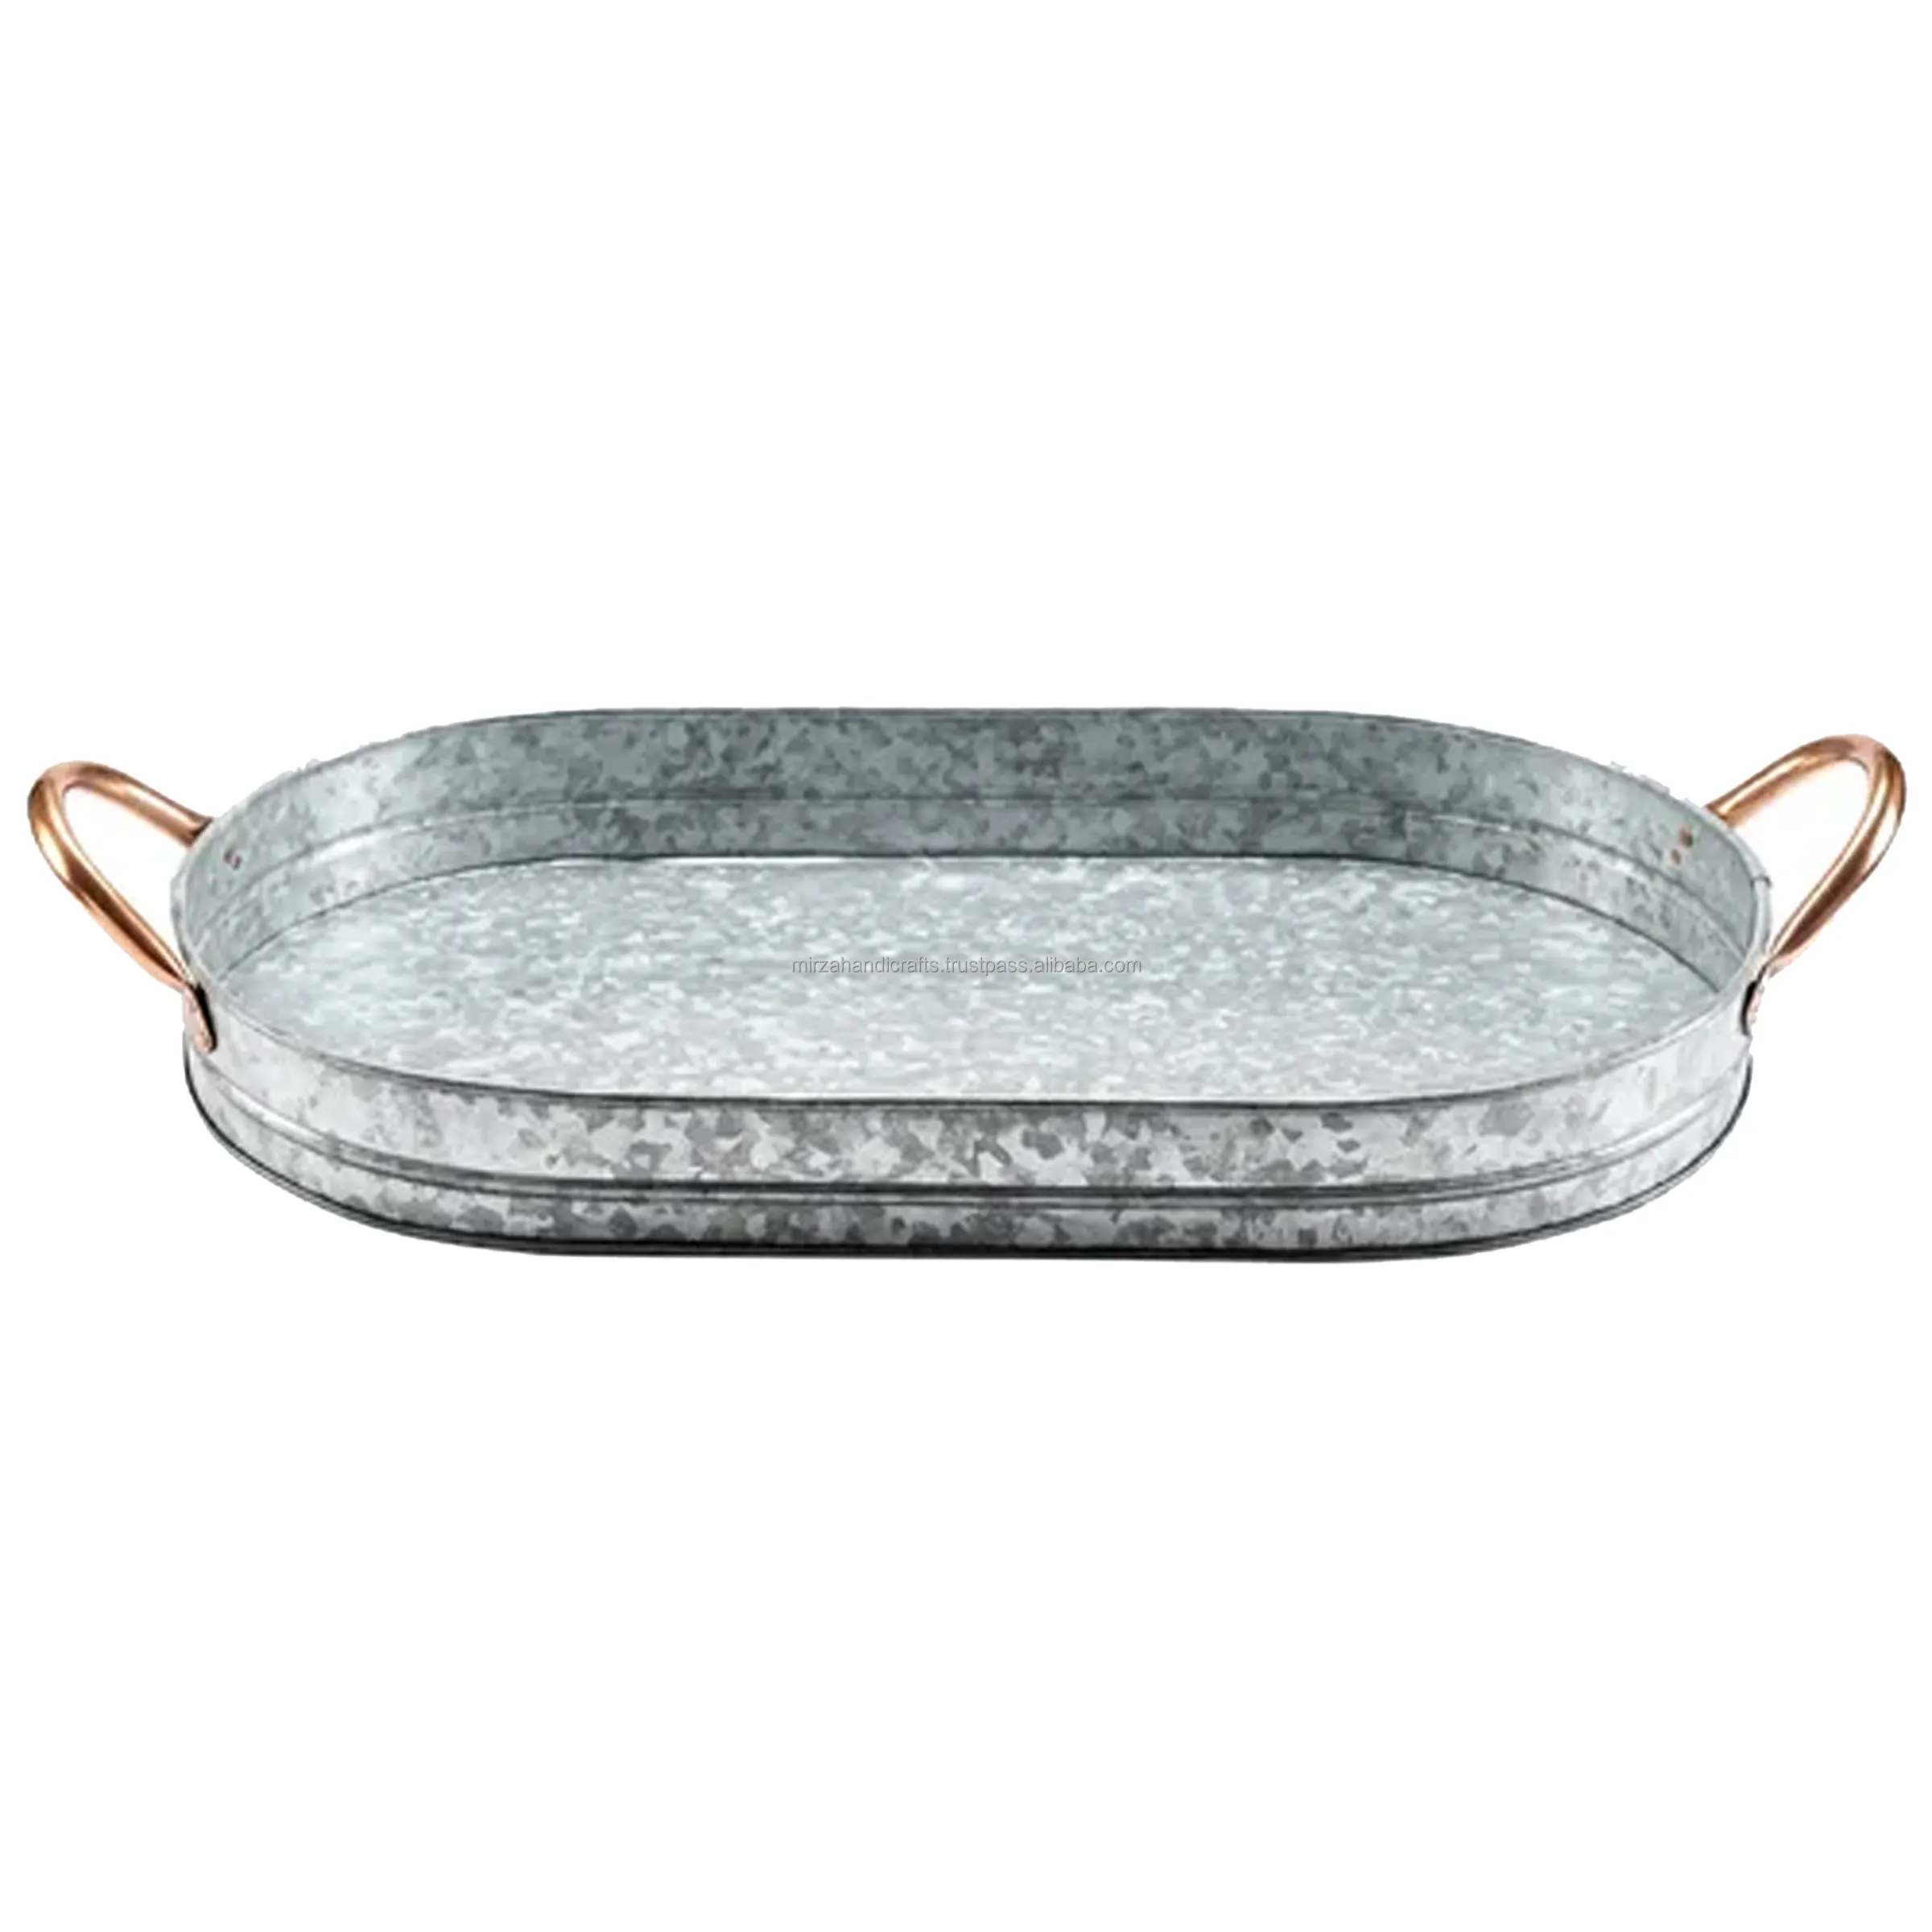 Ovales verzinktes Tablett mit Kupfer griffen Ideal zum Servieren von Cocktails, Vorspeisen, Snacks und anderen Speisen und Getränken